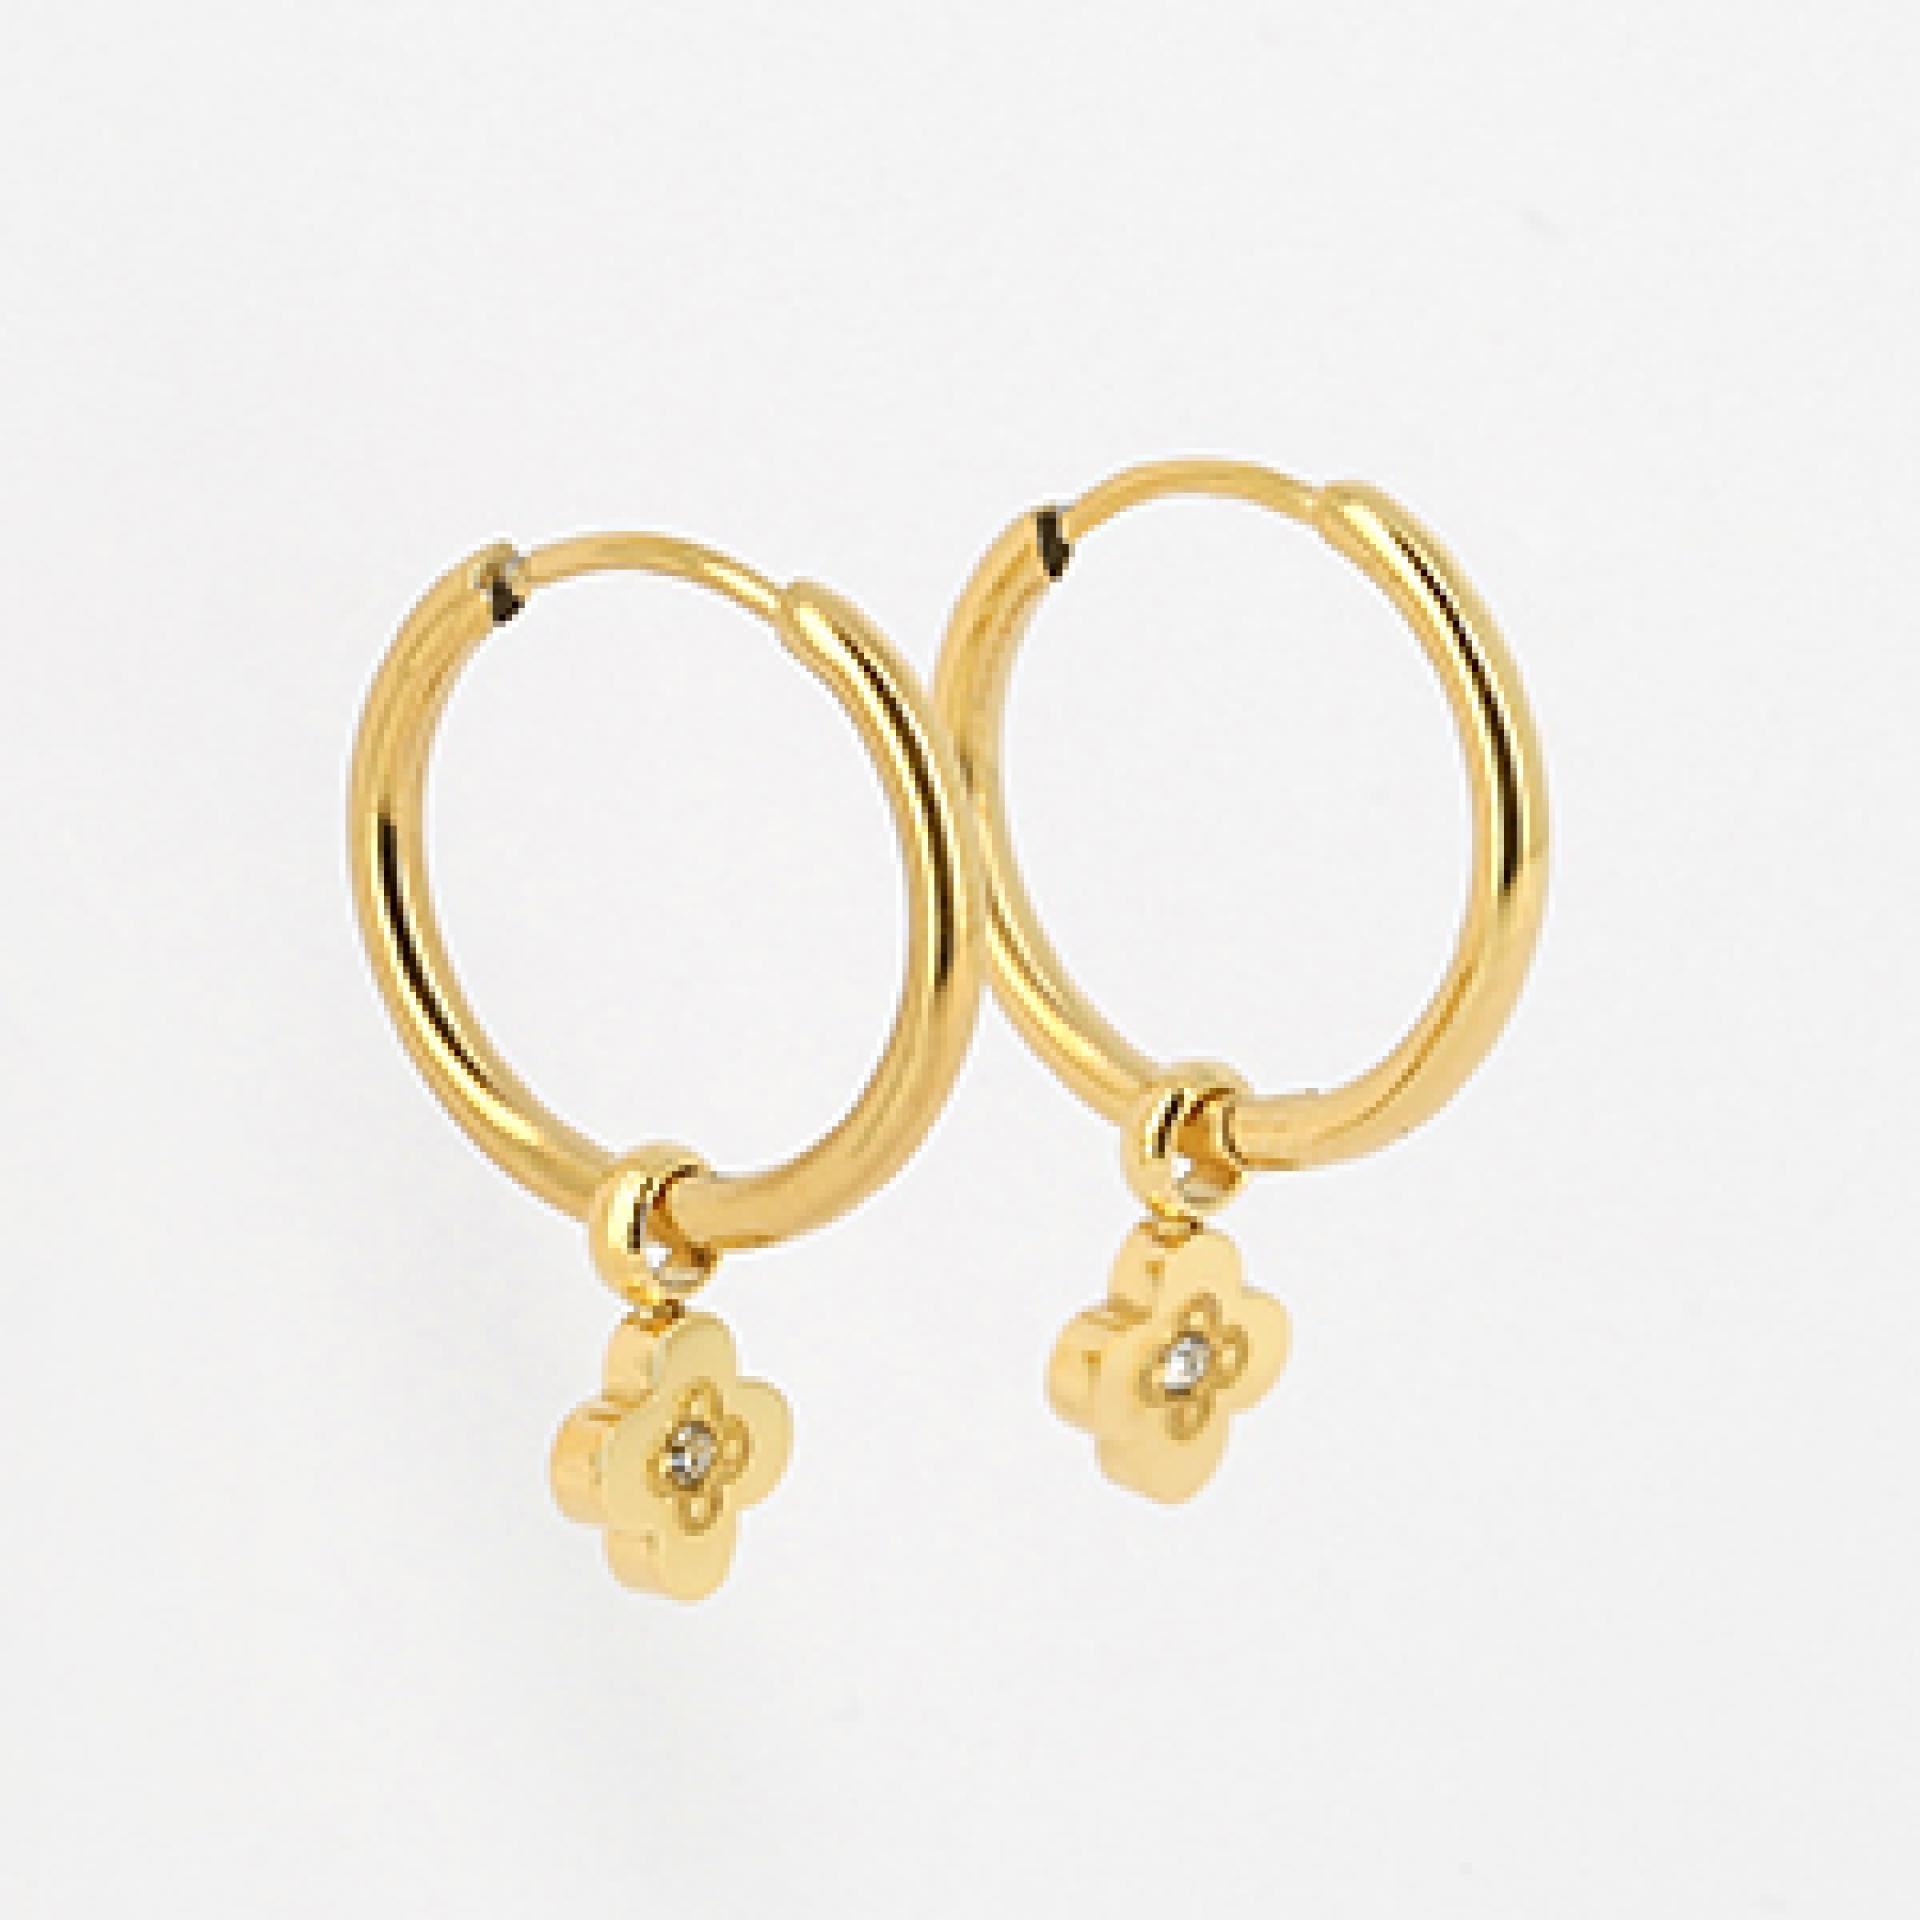 Zag Bijoux EARRINGS MINI GOLDEN STEEL Zirconium 15mm